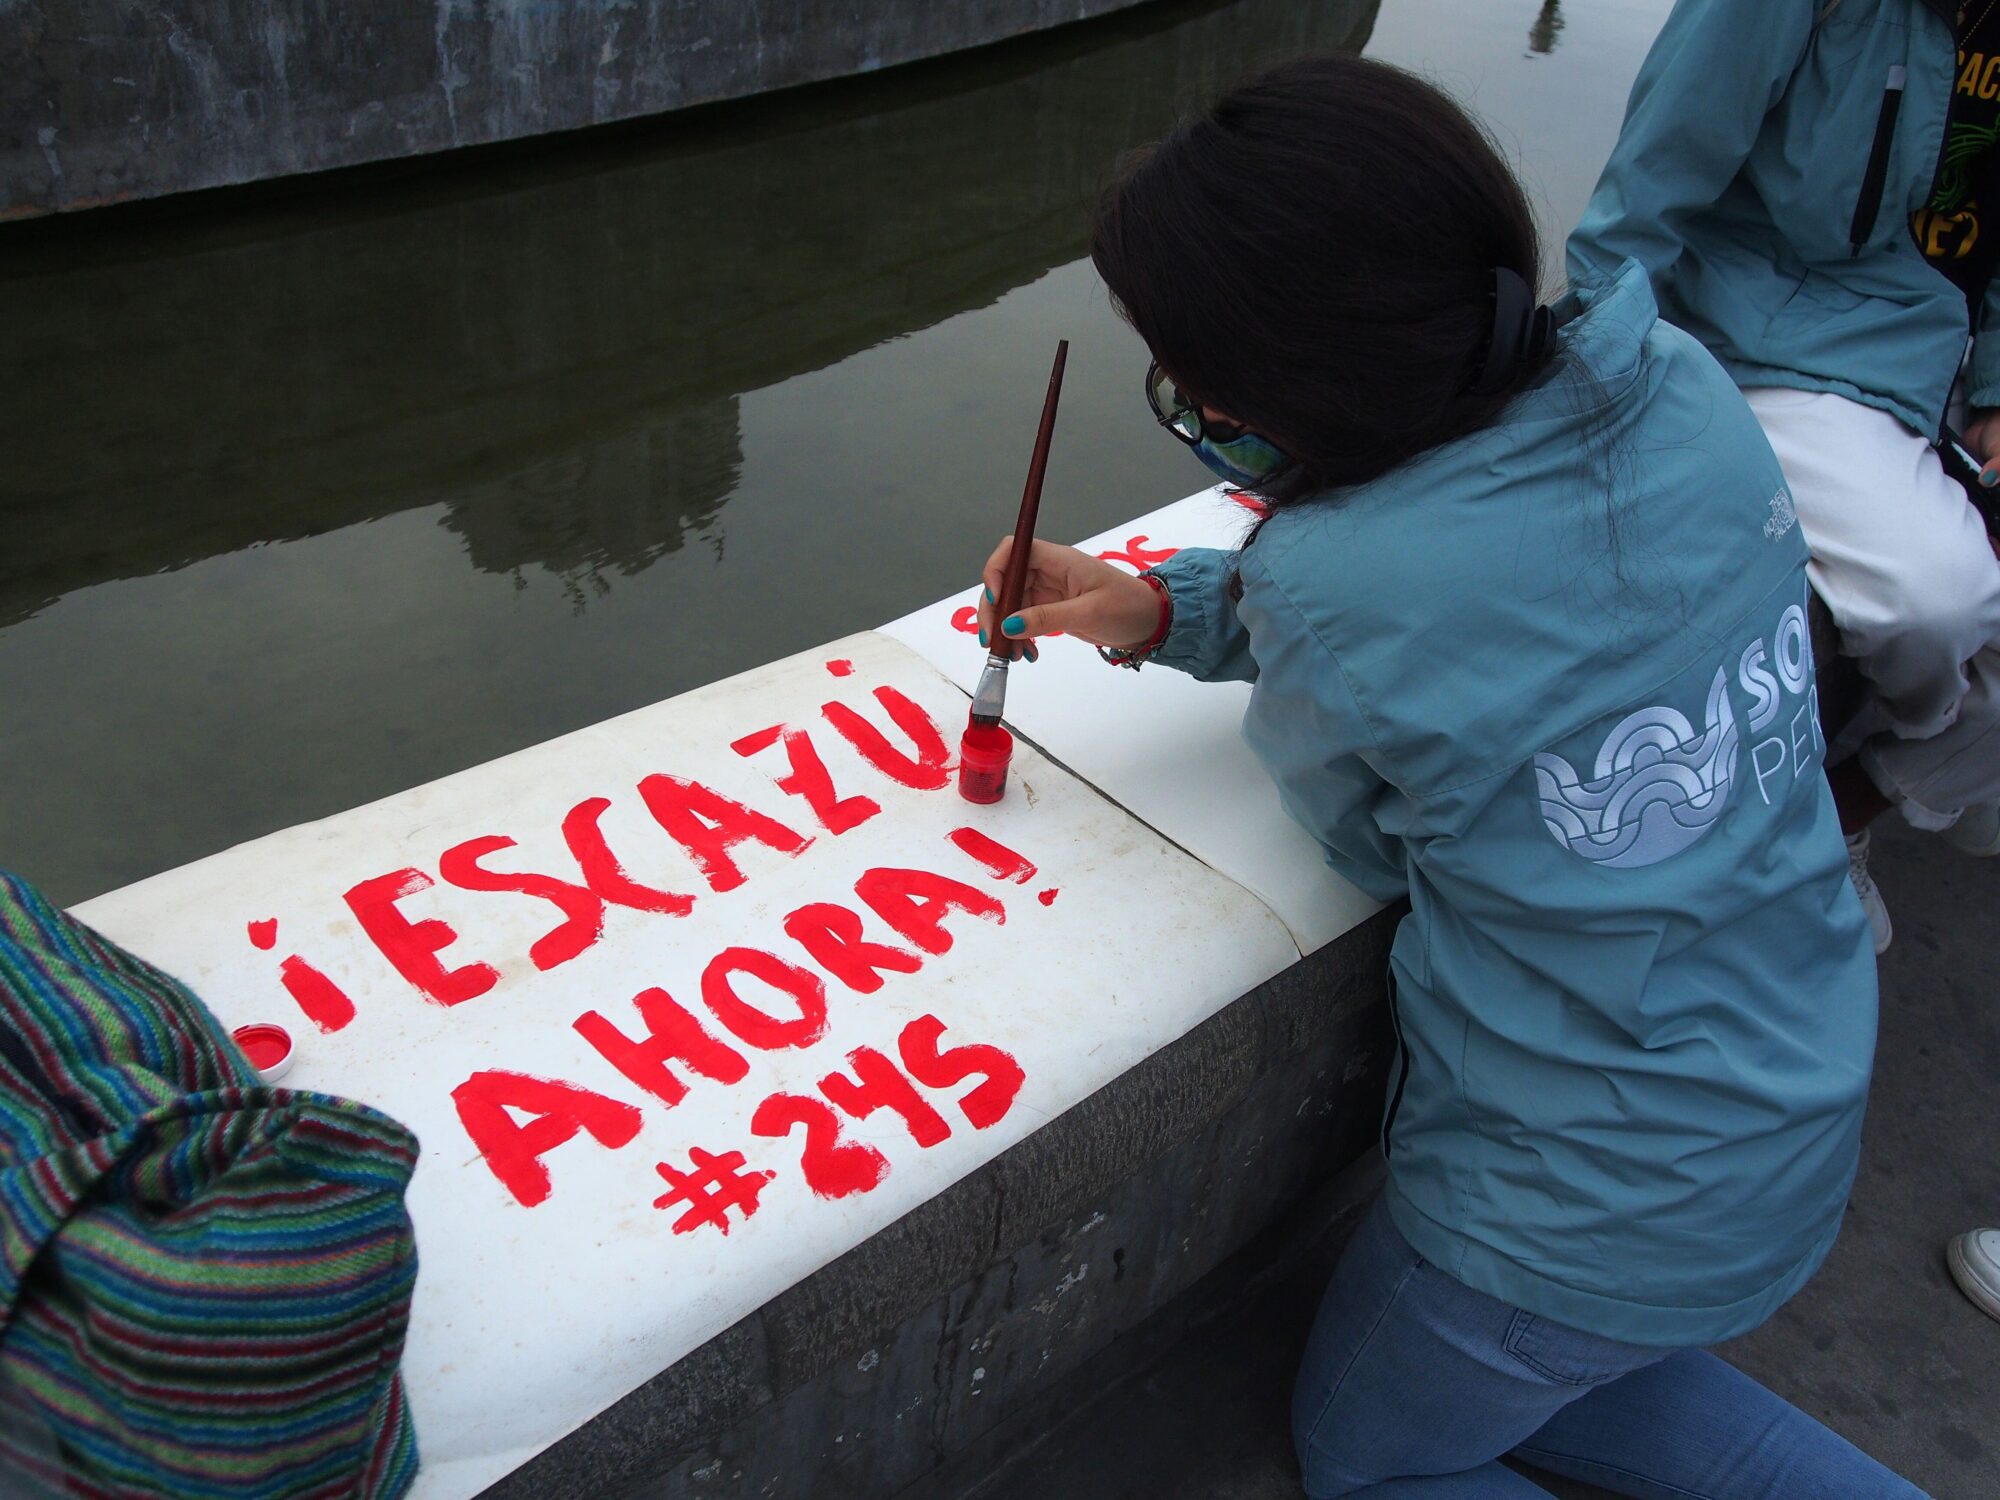 <p>Una persona pinta un cartel que dice &#8220;¡Escazú ahora!&#8221; en una manifestación frente al Palacio Judicial de Perú (Imagen: Agencia de Prensa Fotoholica / Alamy)</p>